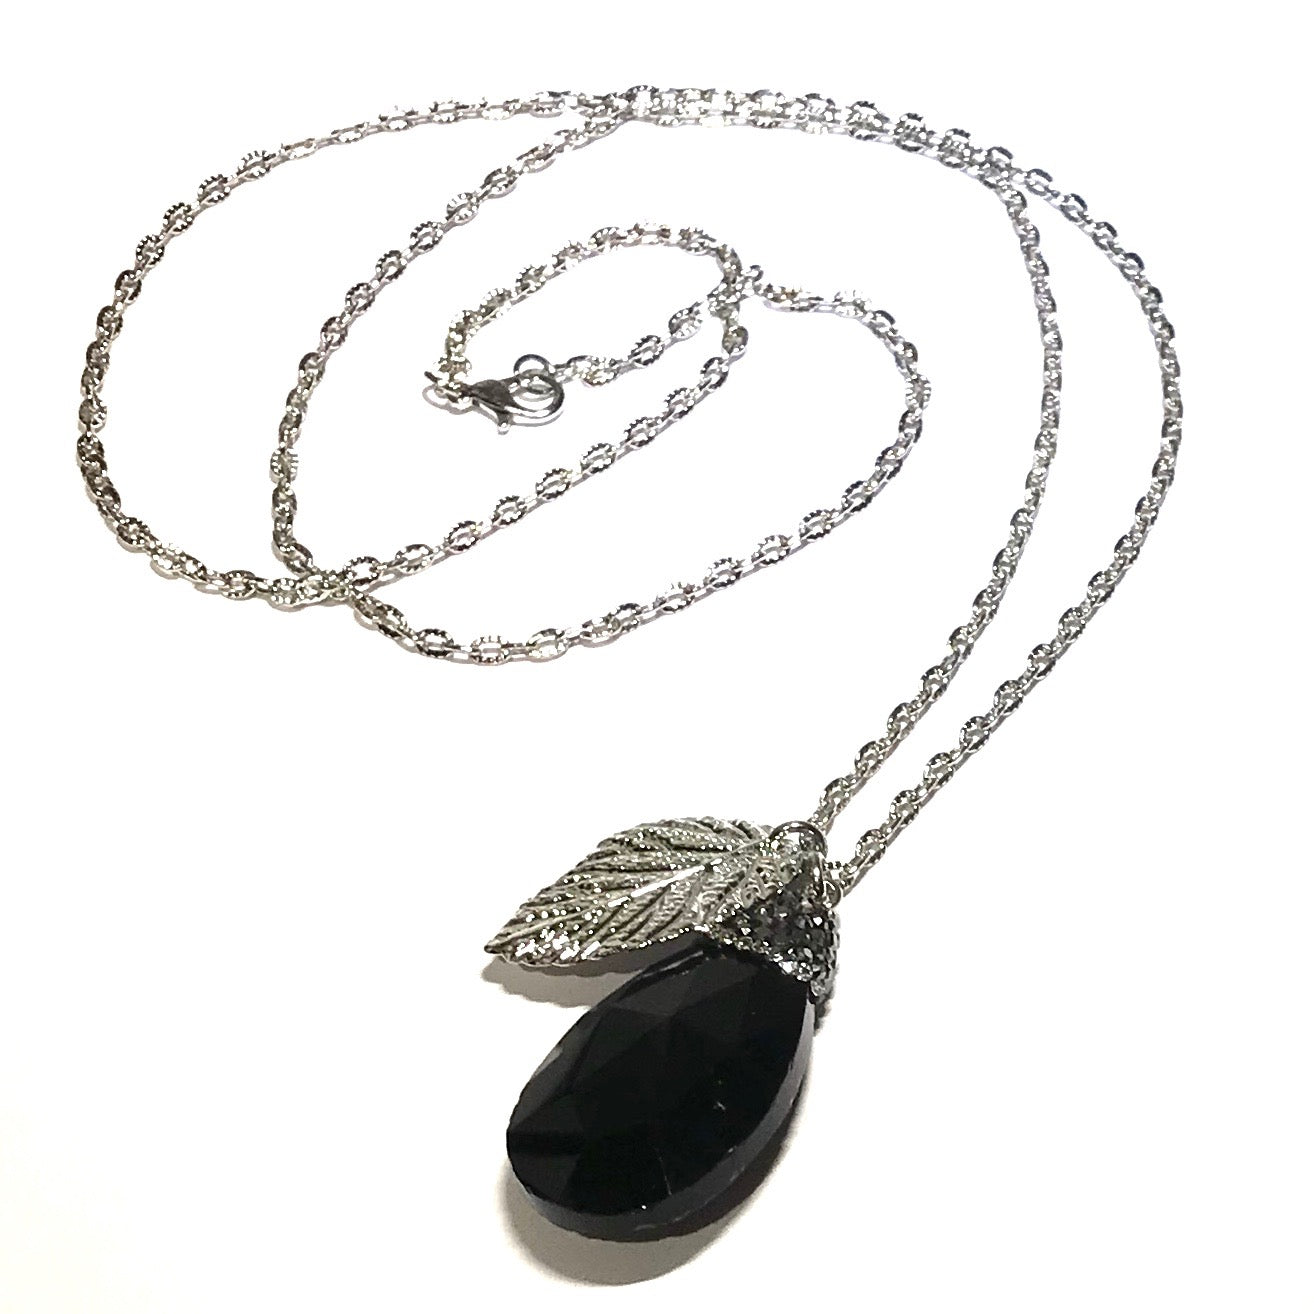 sort-glass-dråpe-sølv-smykke-halskjede